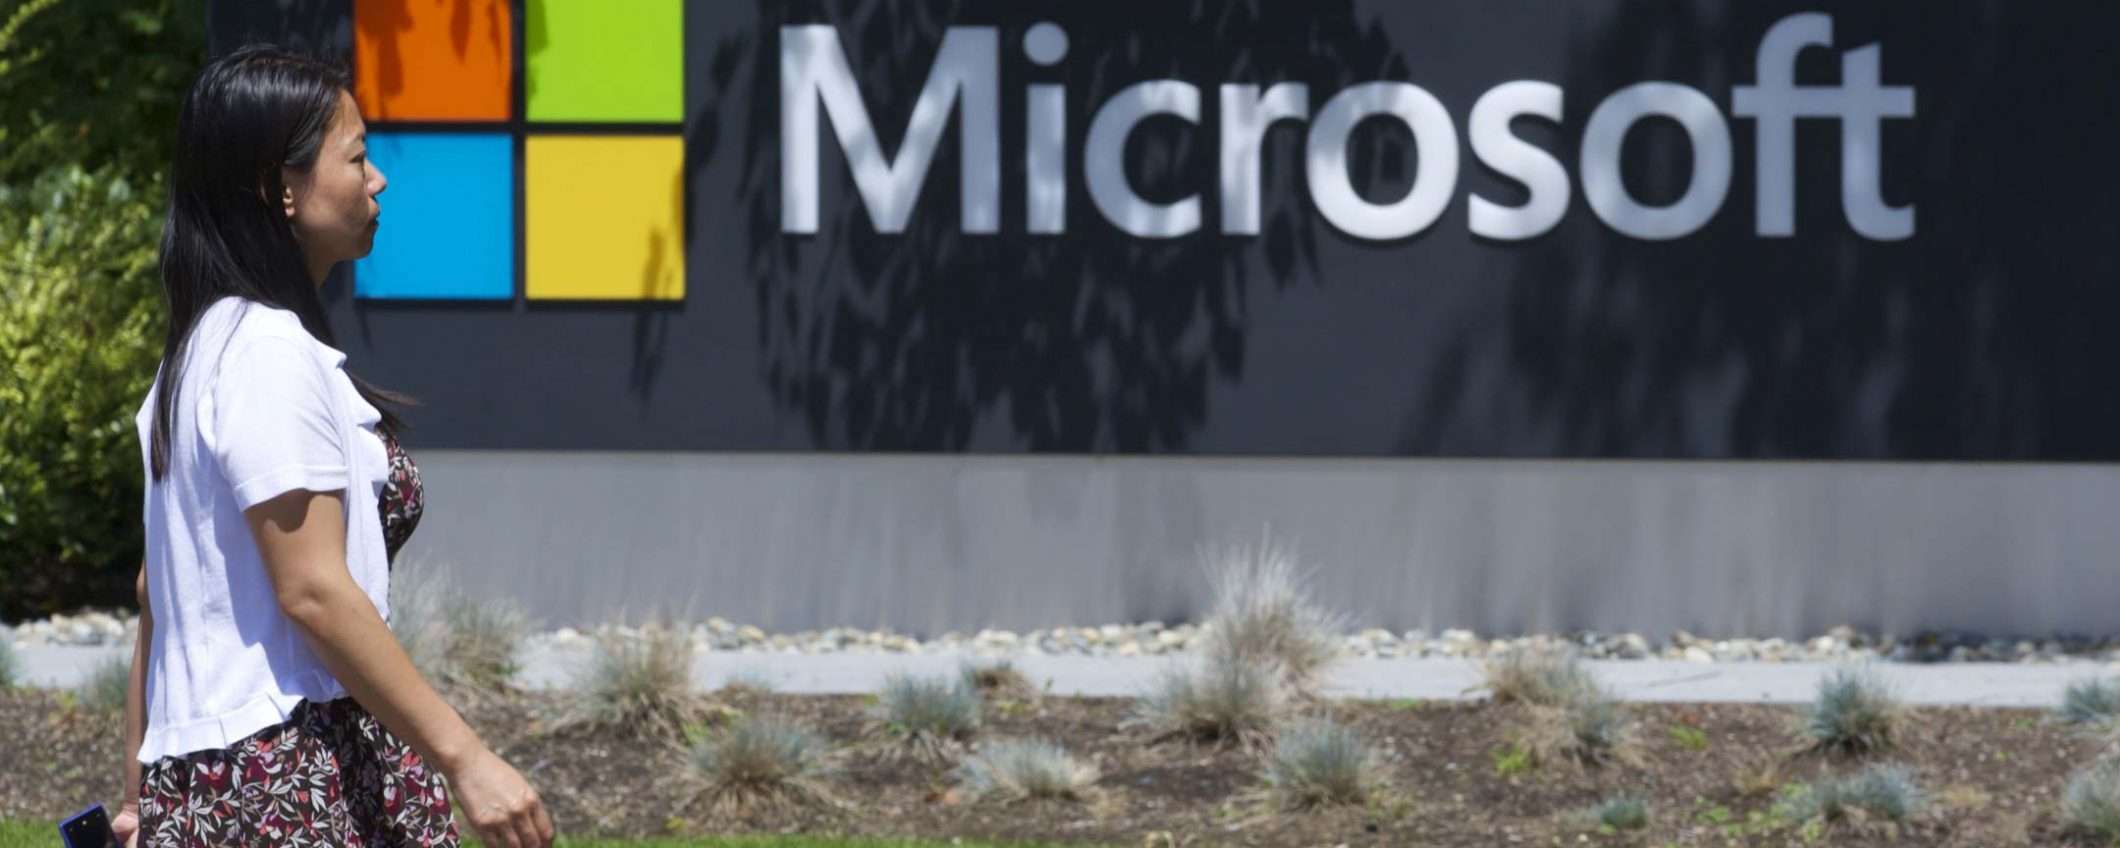 Microsoft chiude gli store: venderà solo online